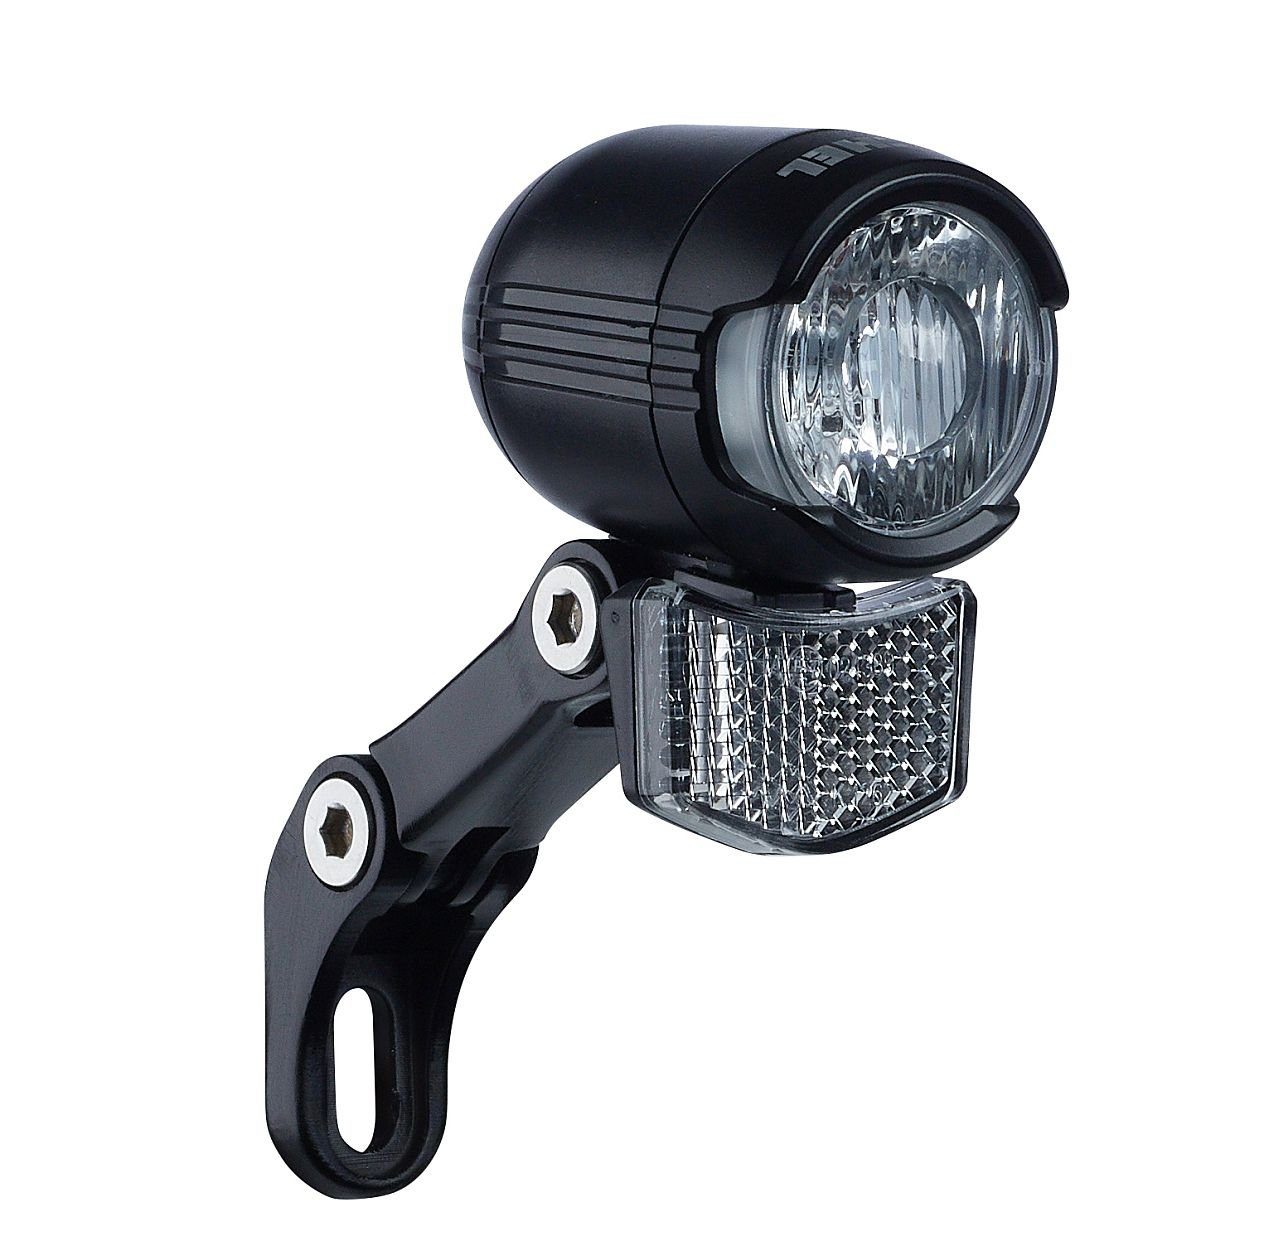 Büchel Fahrradbeleuchtung LED E Bike Scheinwerfer Büchel Shiny 40 Lux 6 48 V schwarz